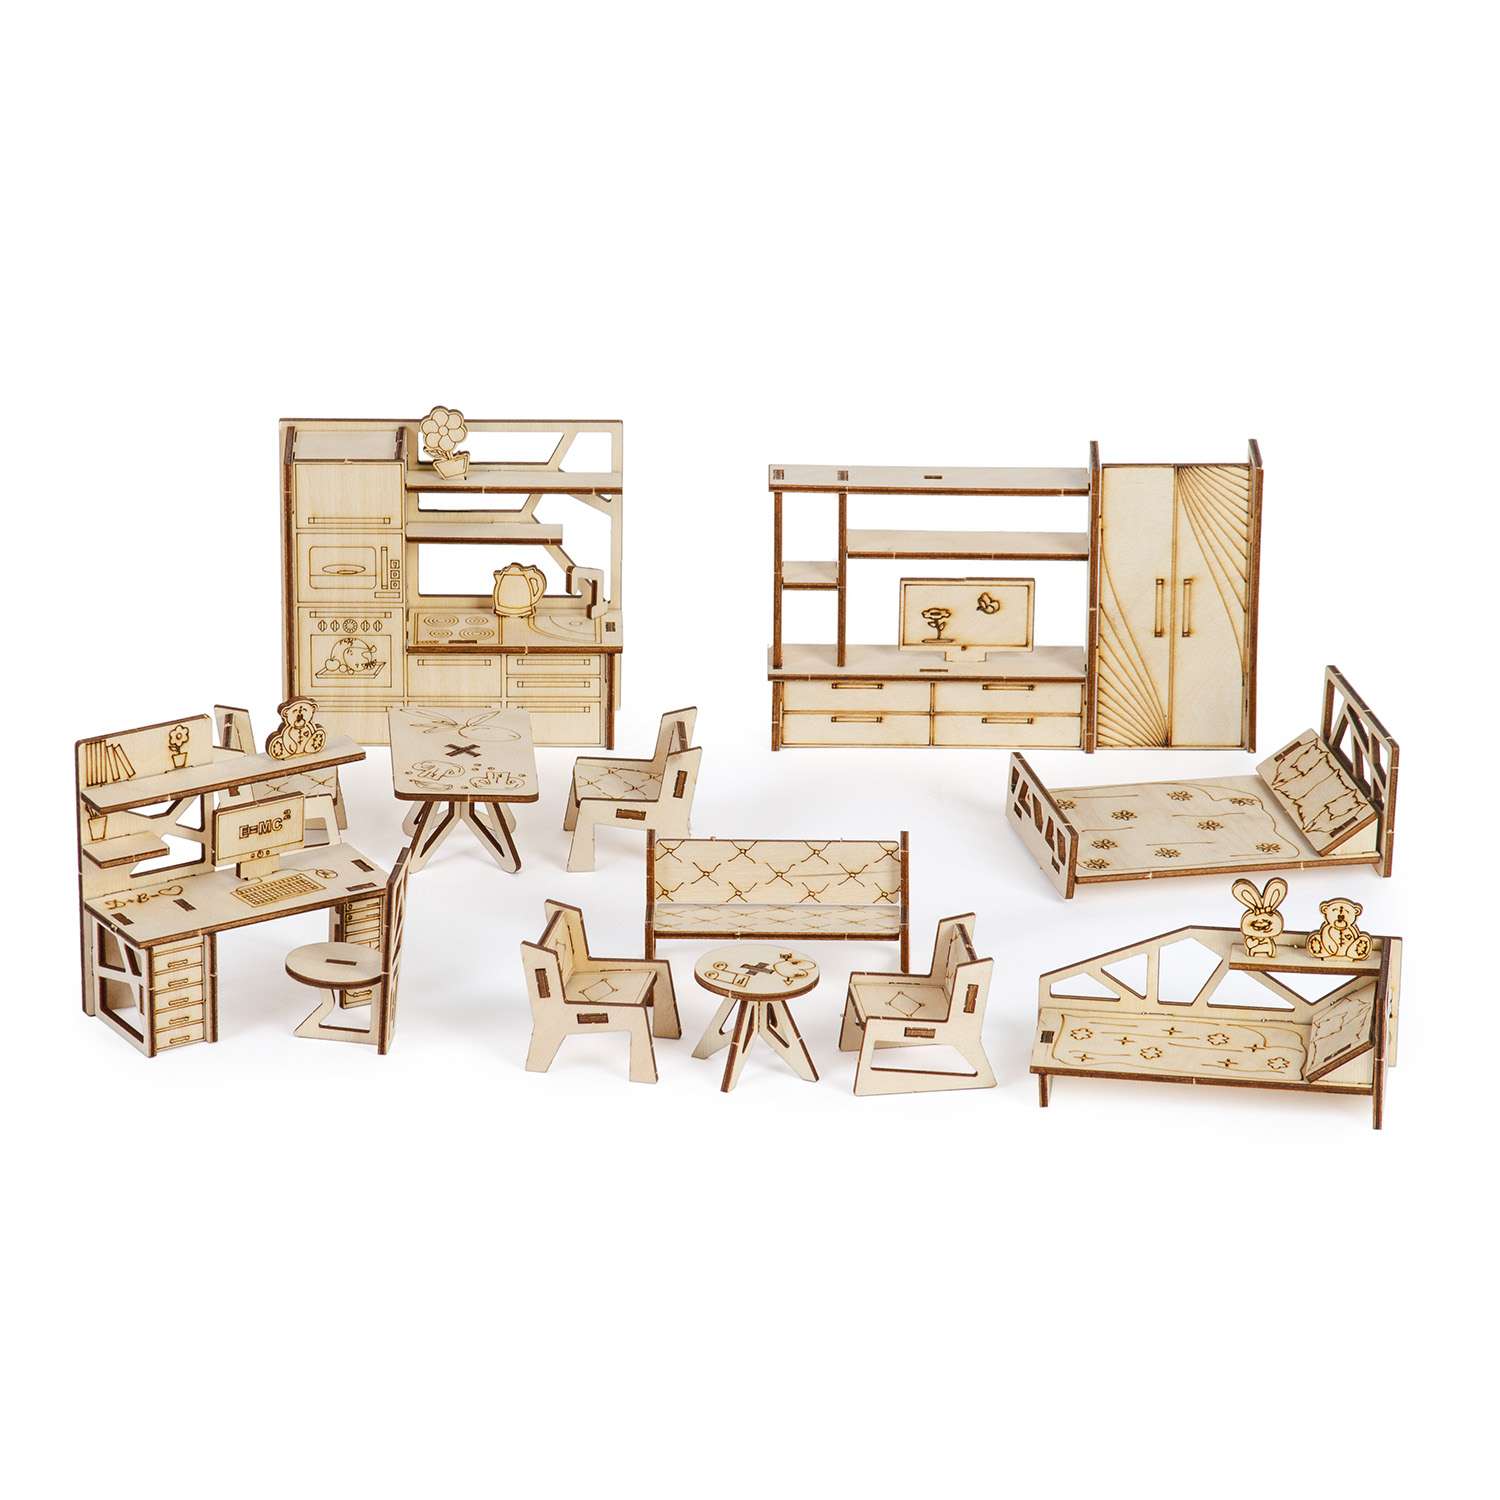 Сборная модель Тутси Кукольный домик Квокки с мебелью из дерева 1-202-2021 - фото 5